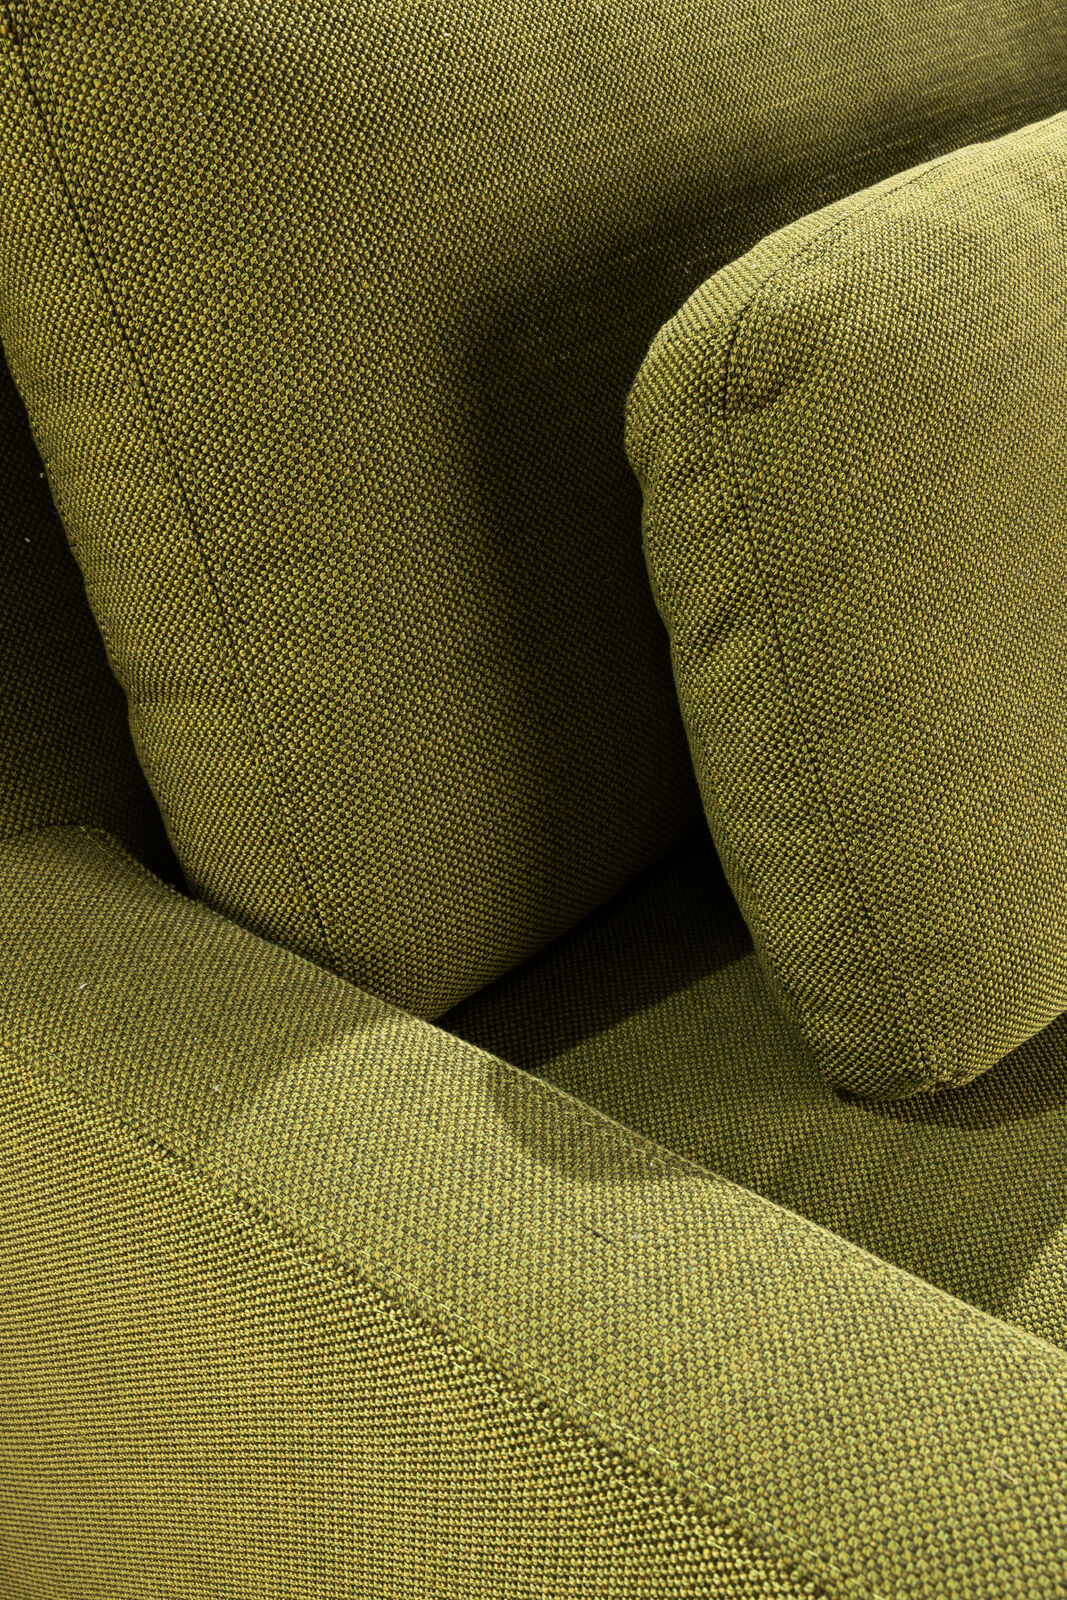 European 1.5 Seater Sofa | Wild Kiwi